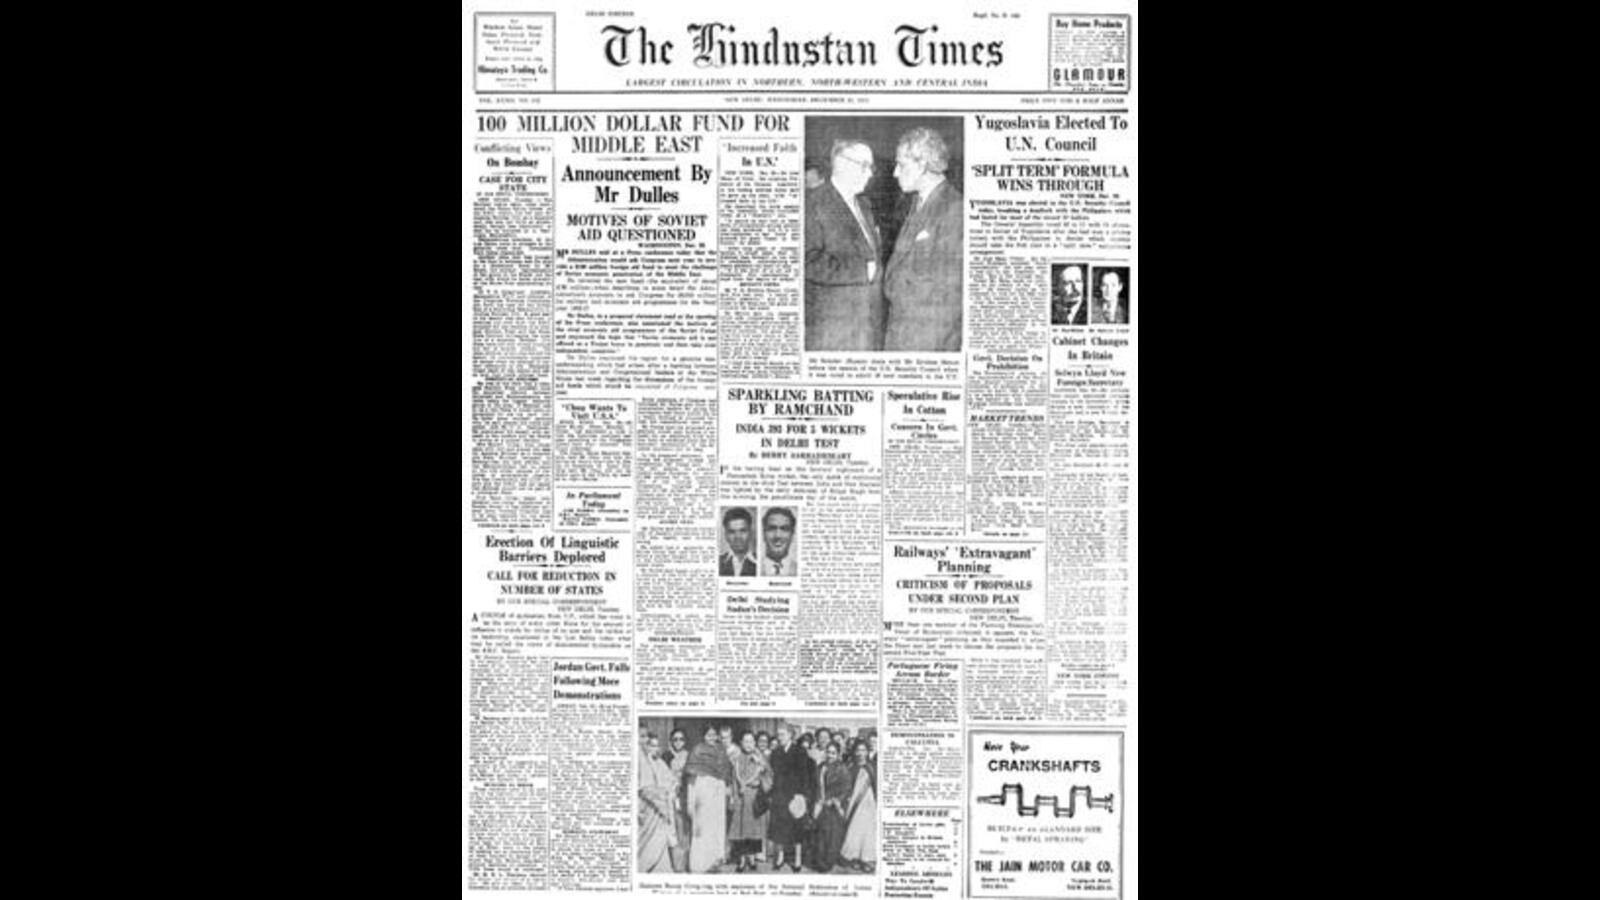 HT hoy: 21 de diciembre de 1955 — Yugoslavia elegida para el Consejo de la ONU |  Últimas noticias de la India